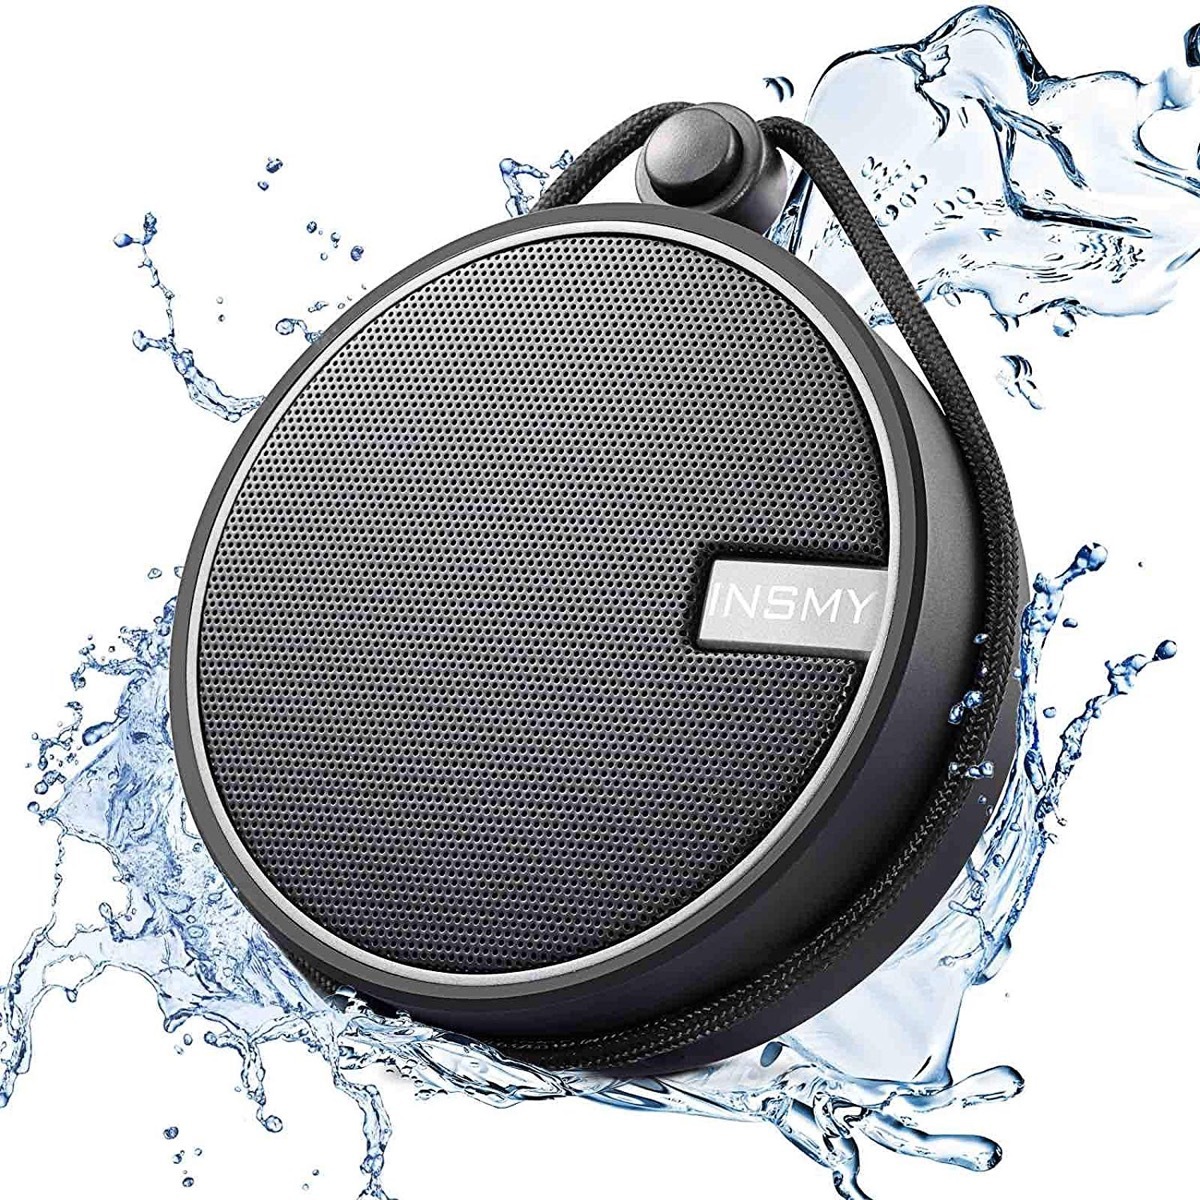 black speaker with water splashing around it, bathroom accessories